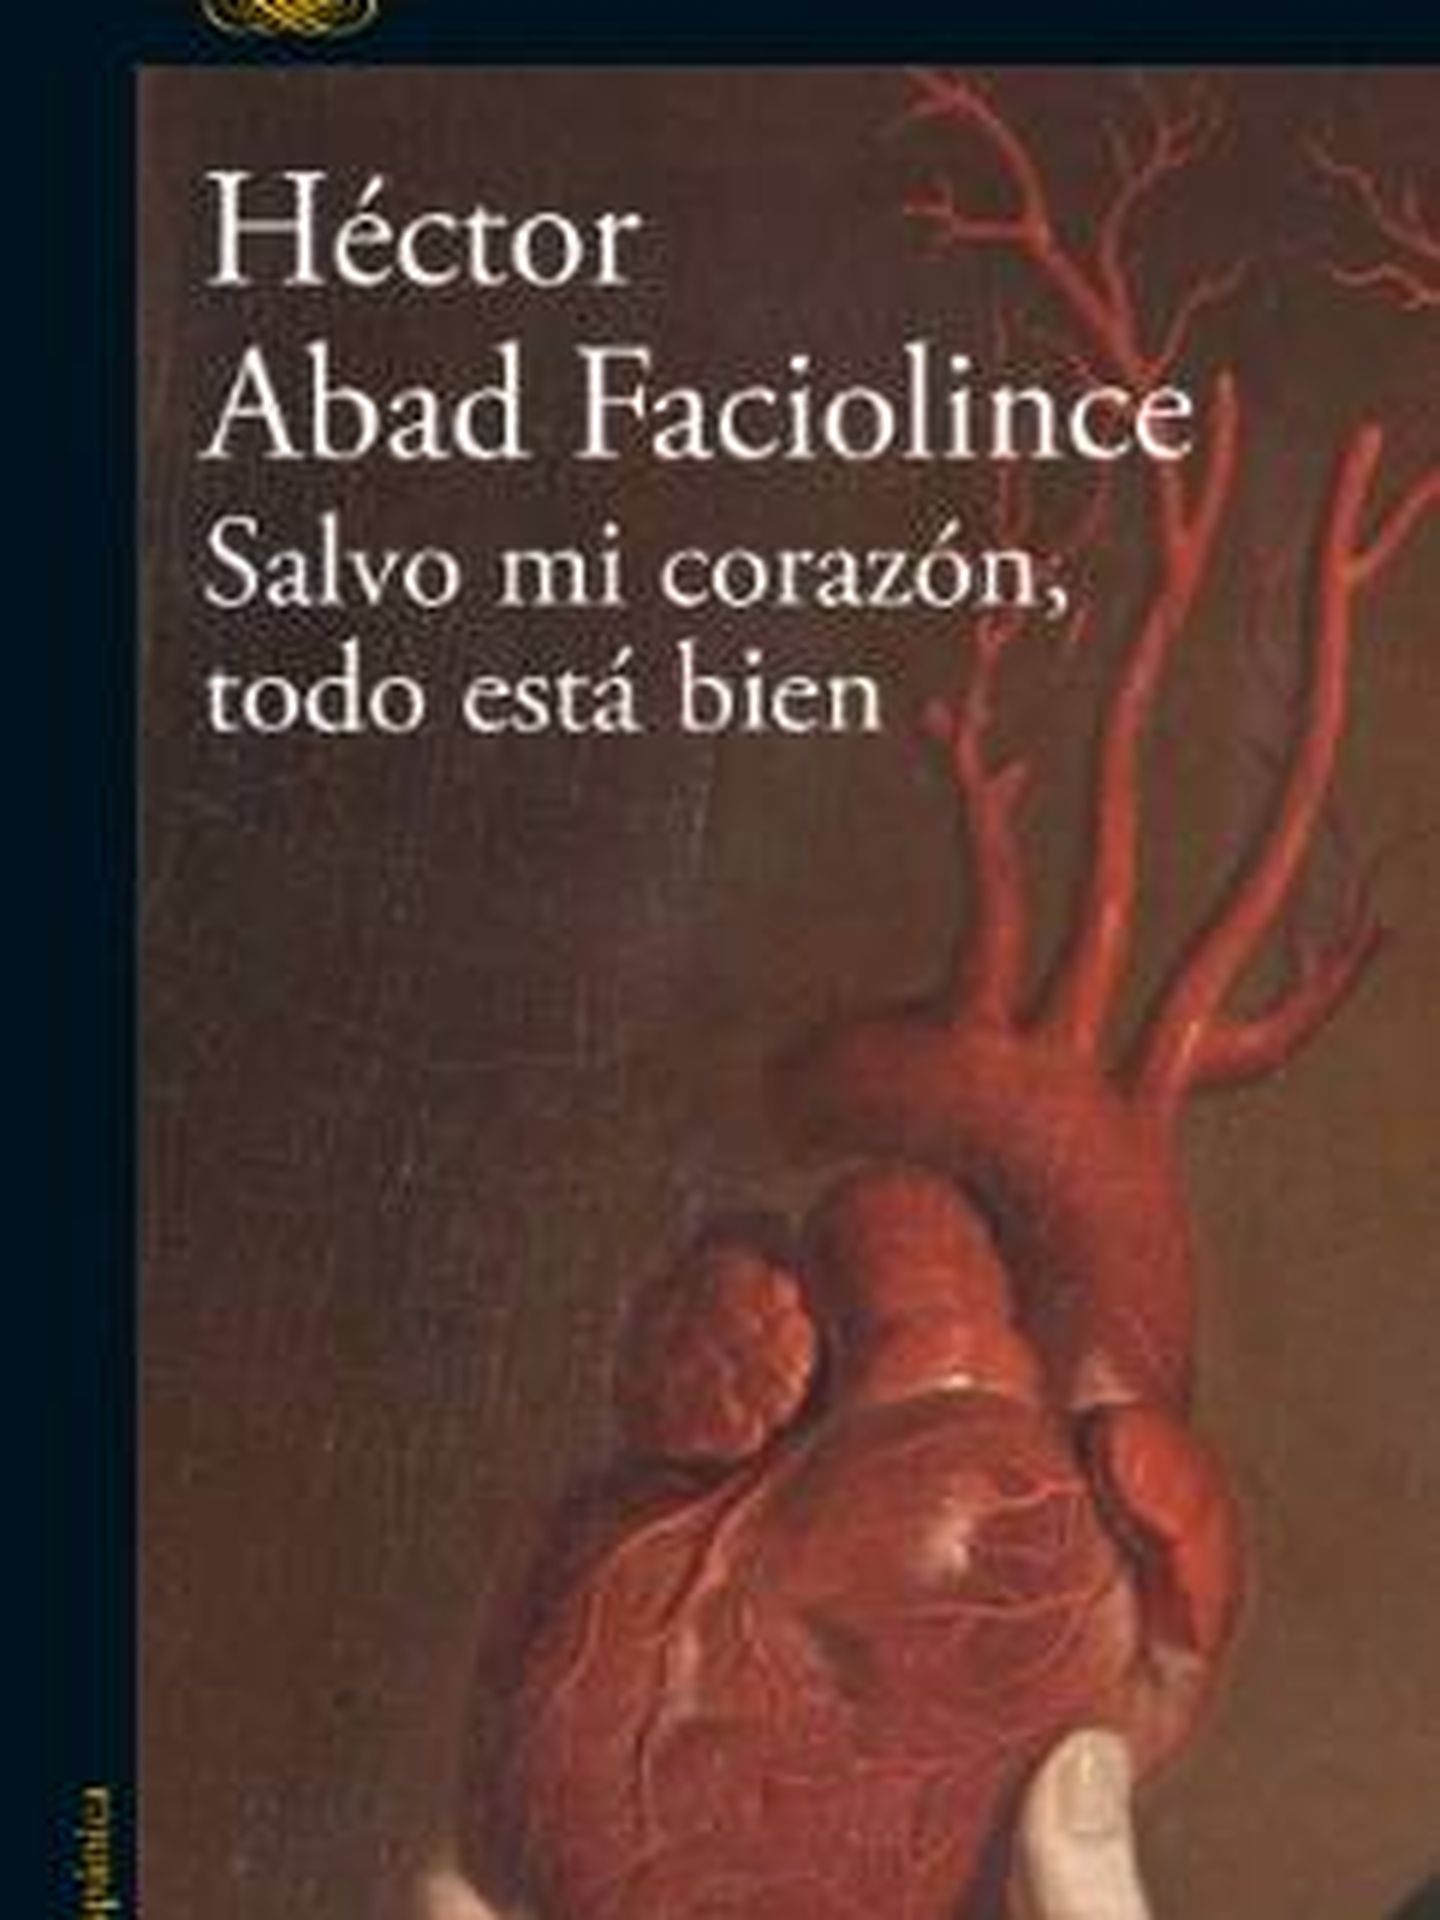 'Salvo mi corazón, todo está bien', de Héctor Abad Faciolince. 